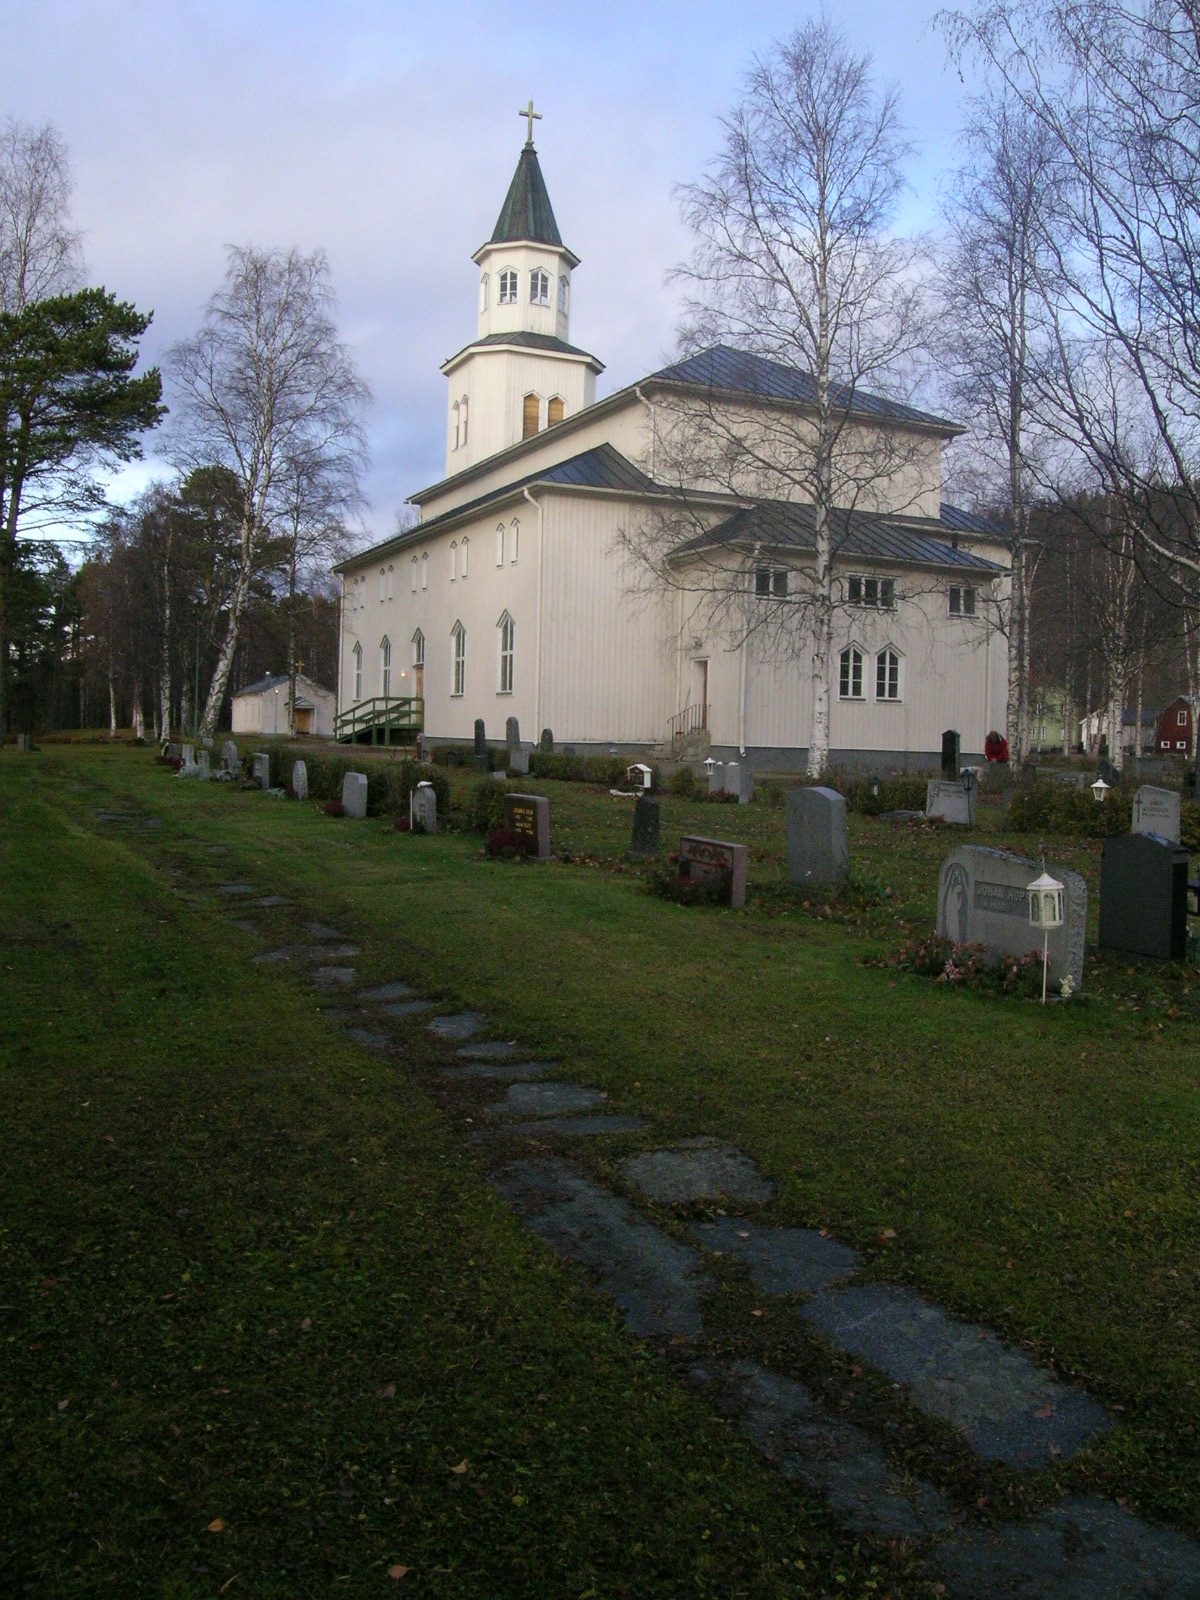 Tåsjö kyrka med omgivande kyrkogård, vy från sydöst. 

Bilderna är tagna av Martin Lagergren & Emelie Petersson, bebyggelseantikvarier vid Jämtlands läns museum, i samband med inventeringen, 2004-2005.